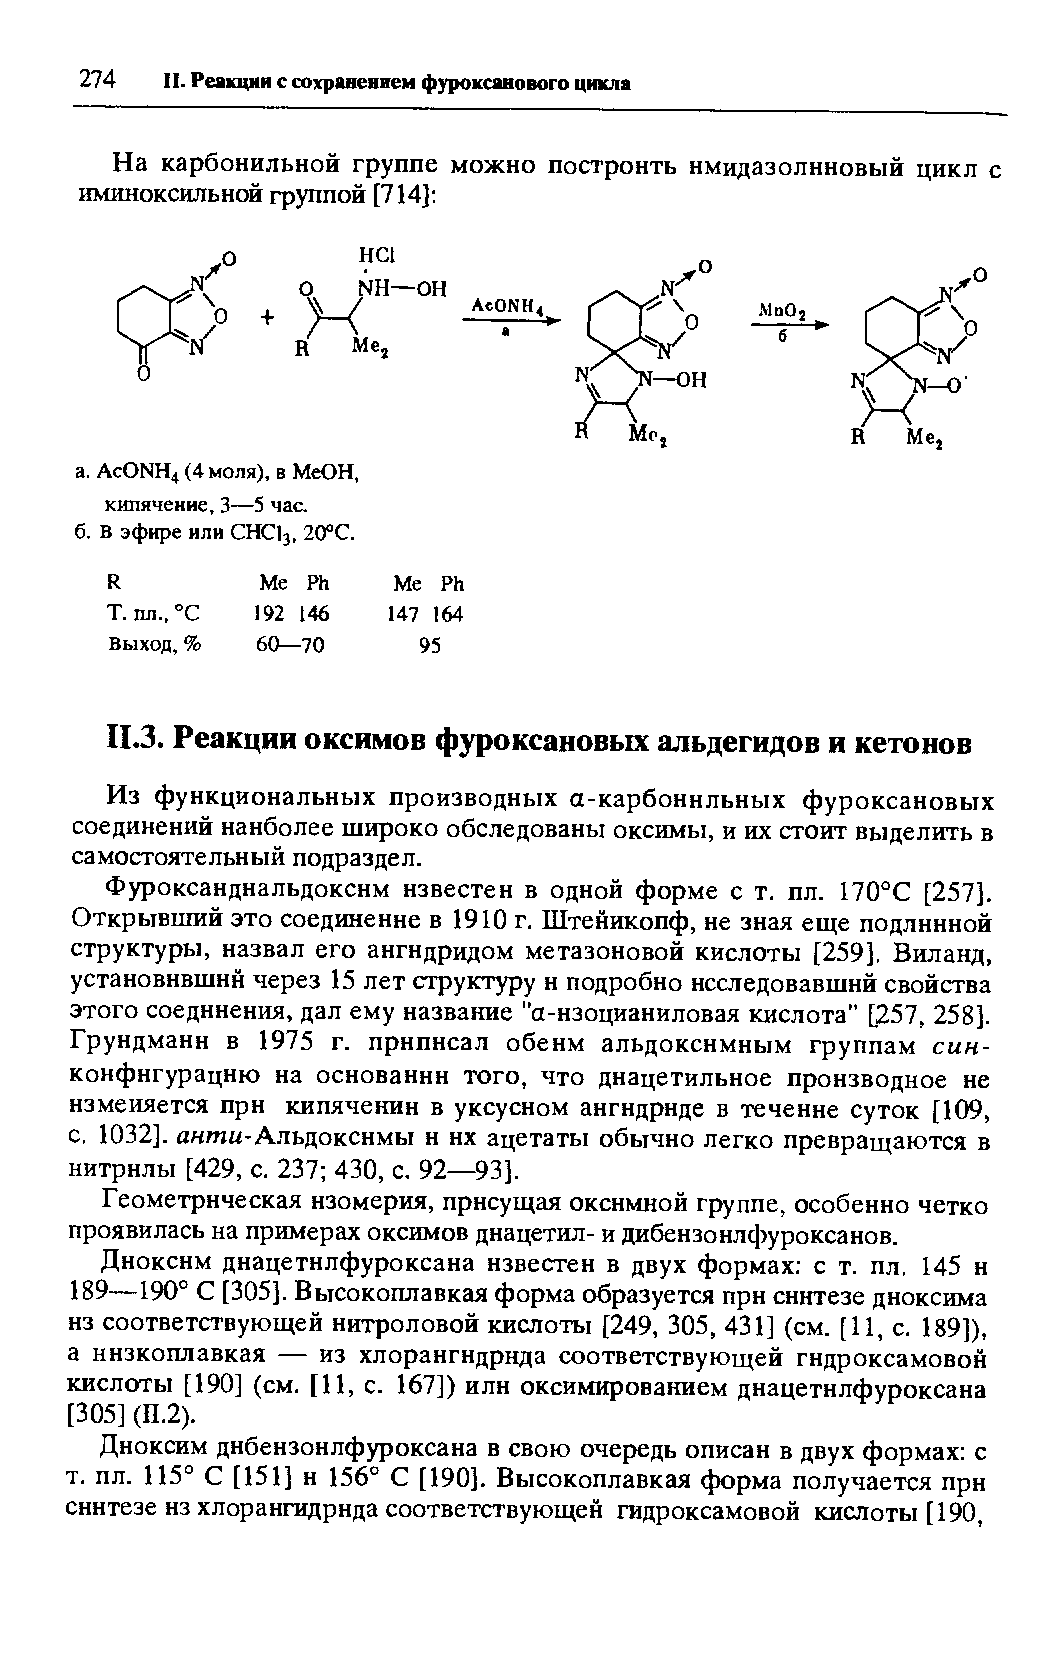 Из функциональных производных а-карбоннльных фуроксановых соединений наиболее широко обследованы оксимы, и их стоит выделить в самостоятельный подраздел.